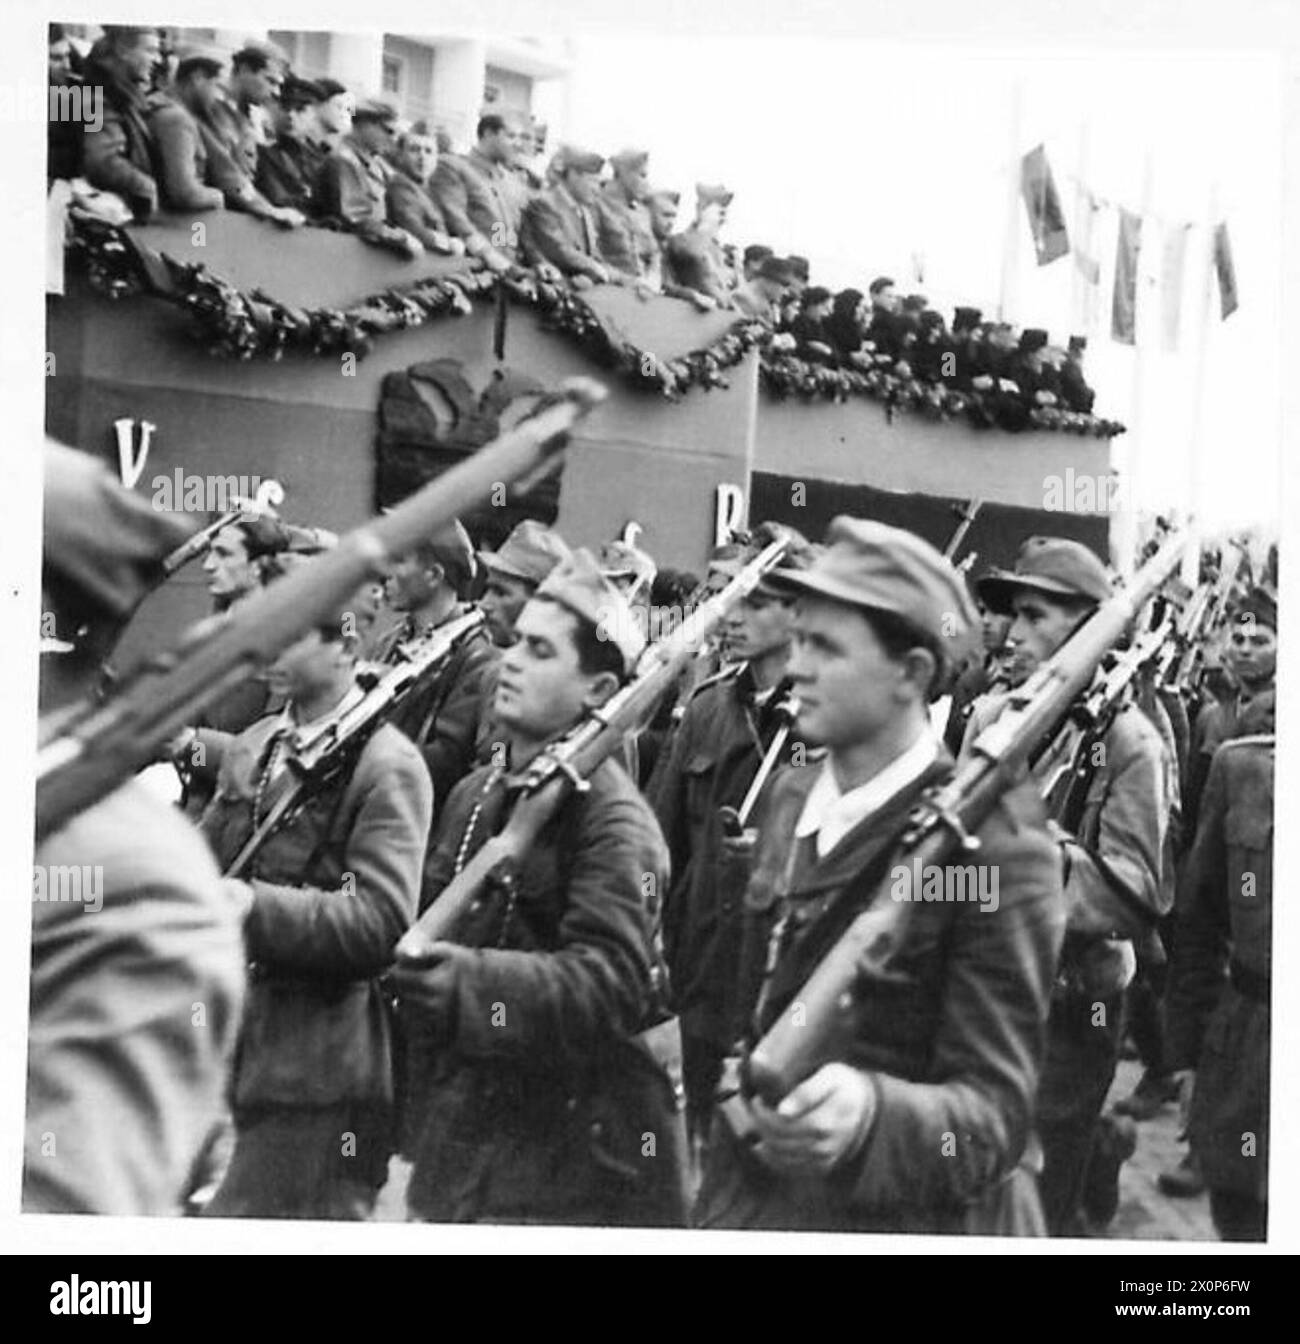 GIORNATA DELL'INDIPENDENZA IN ALBANIA - le truppe partigiane del 1° corpo marciano oltre la base salutista durante la parata del giorno dell'indipendenza a Tiana, la capitale dell'Albania. Negativo fotografico, British Army Foto Stock